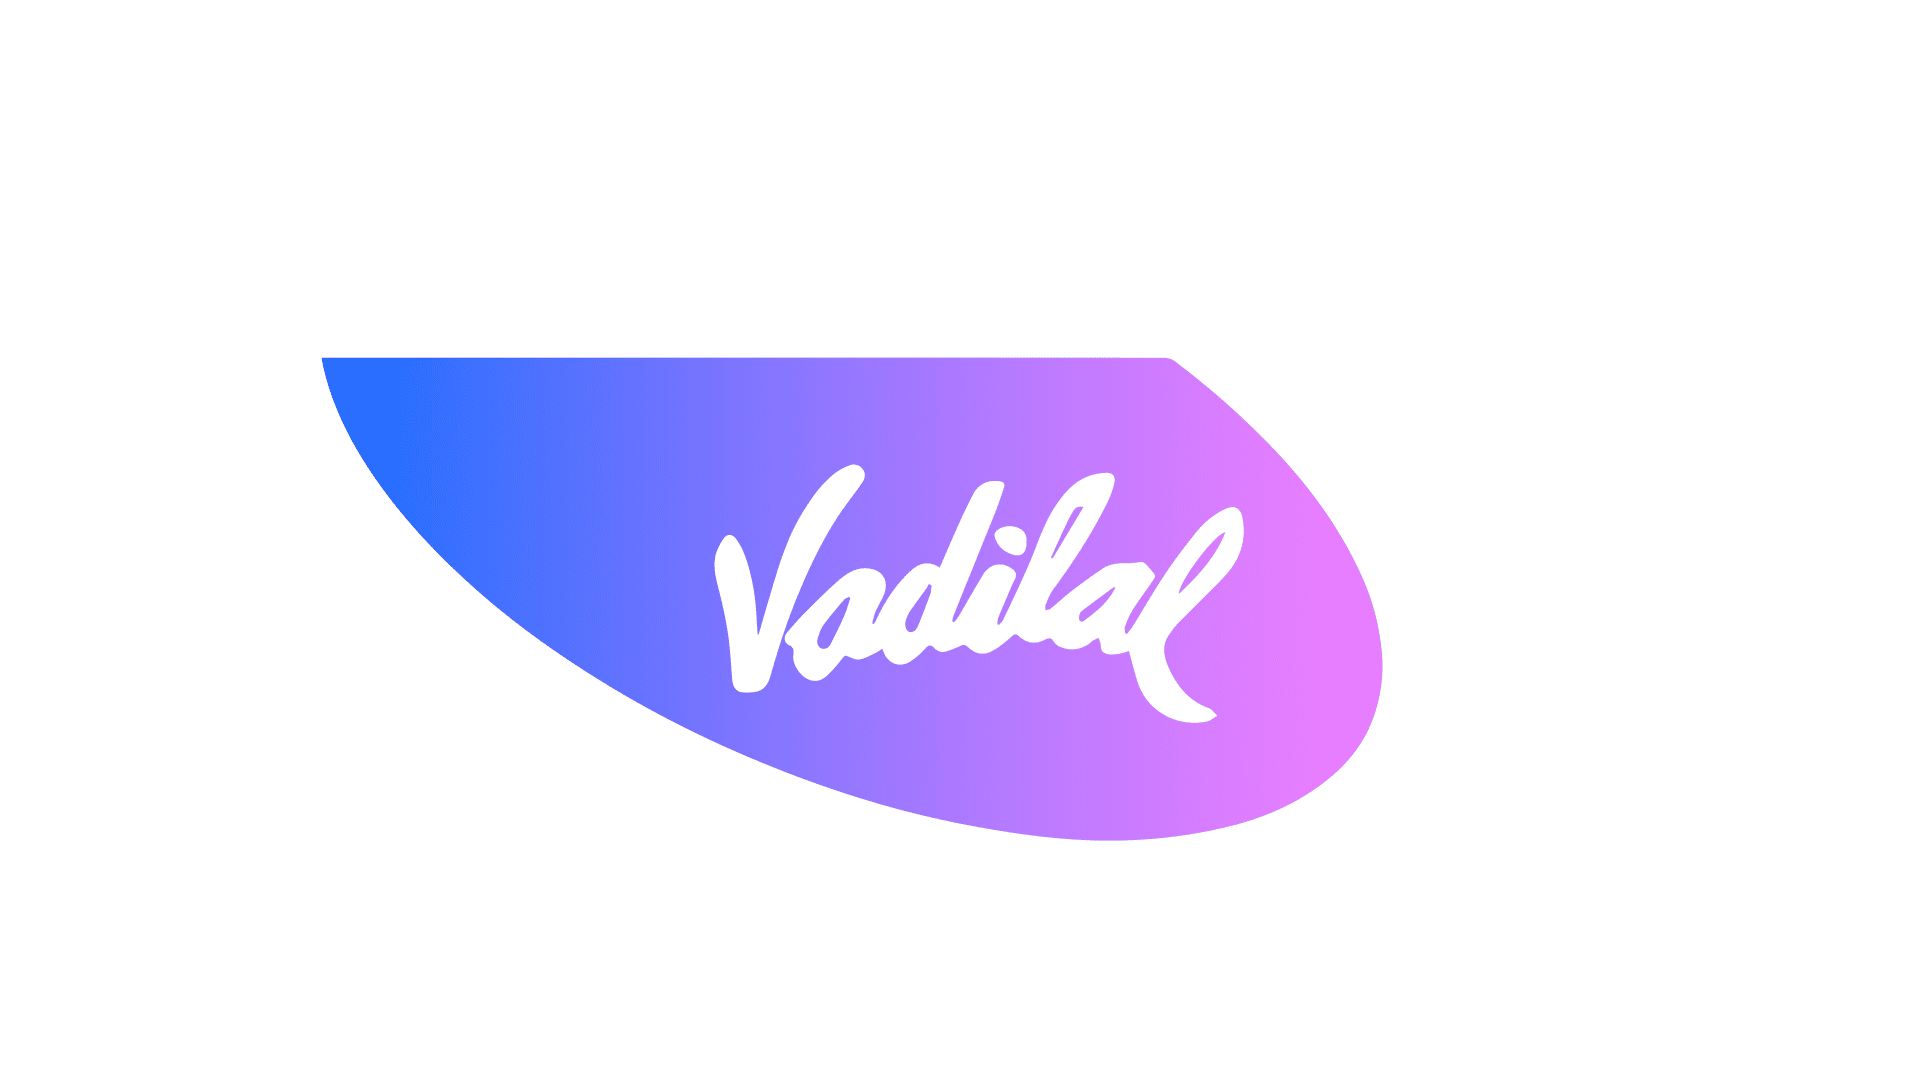 Vadilal Scoop Shop - Ice Cream Shop in Surat